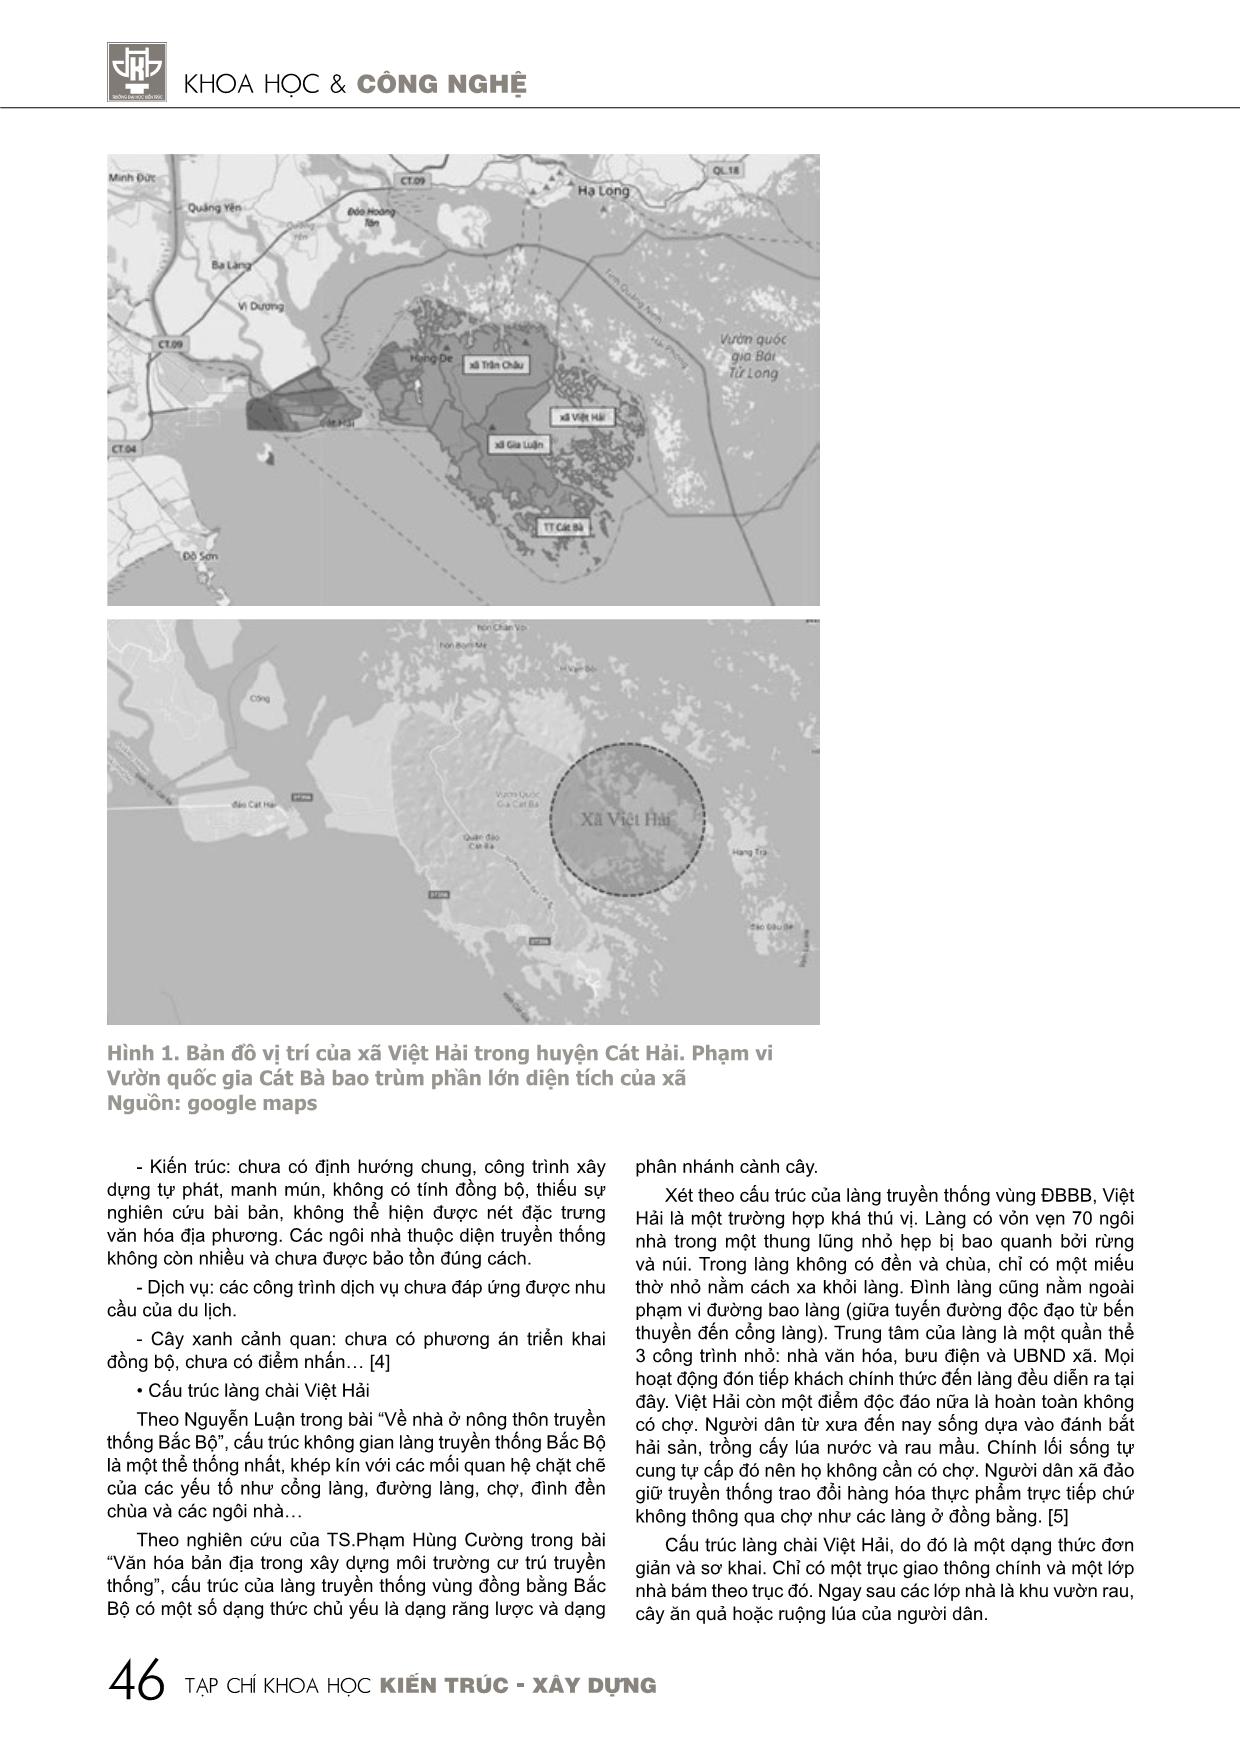 Sự chuyển đổi cấu trúc làng chài Việt Hải trong quá trình phát triển du lịch cộng đồng trang 2